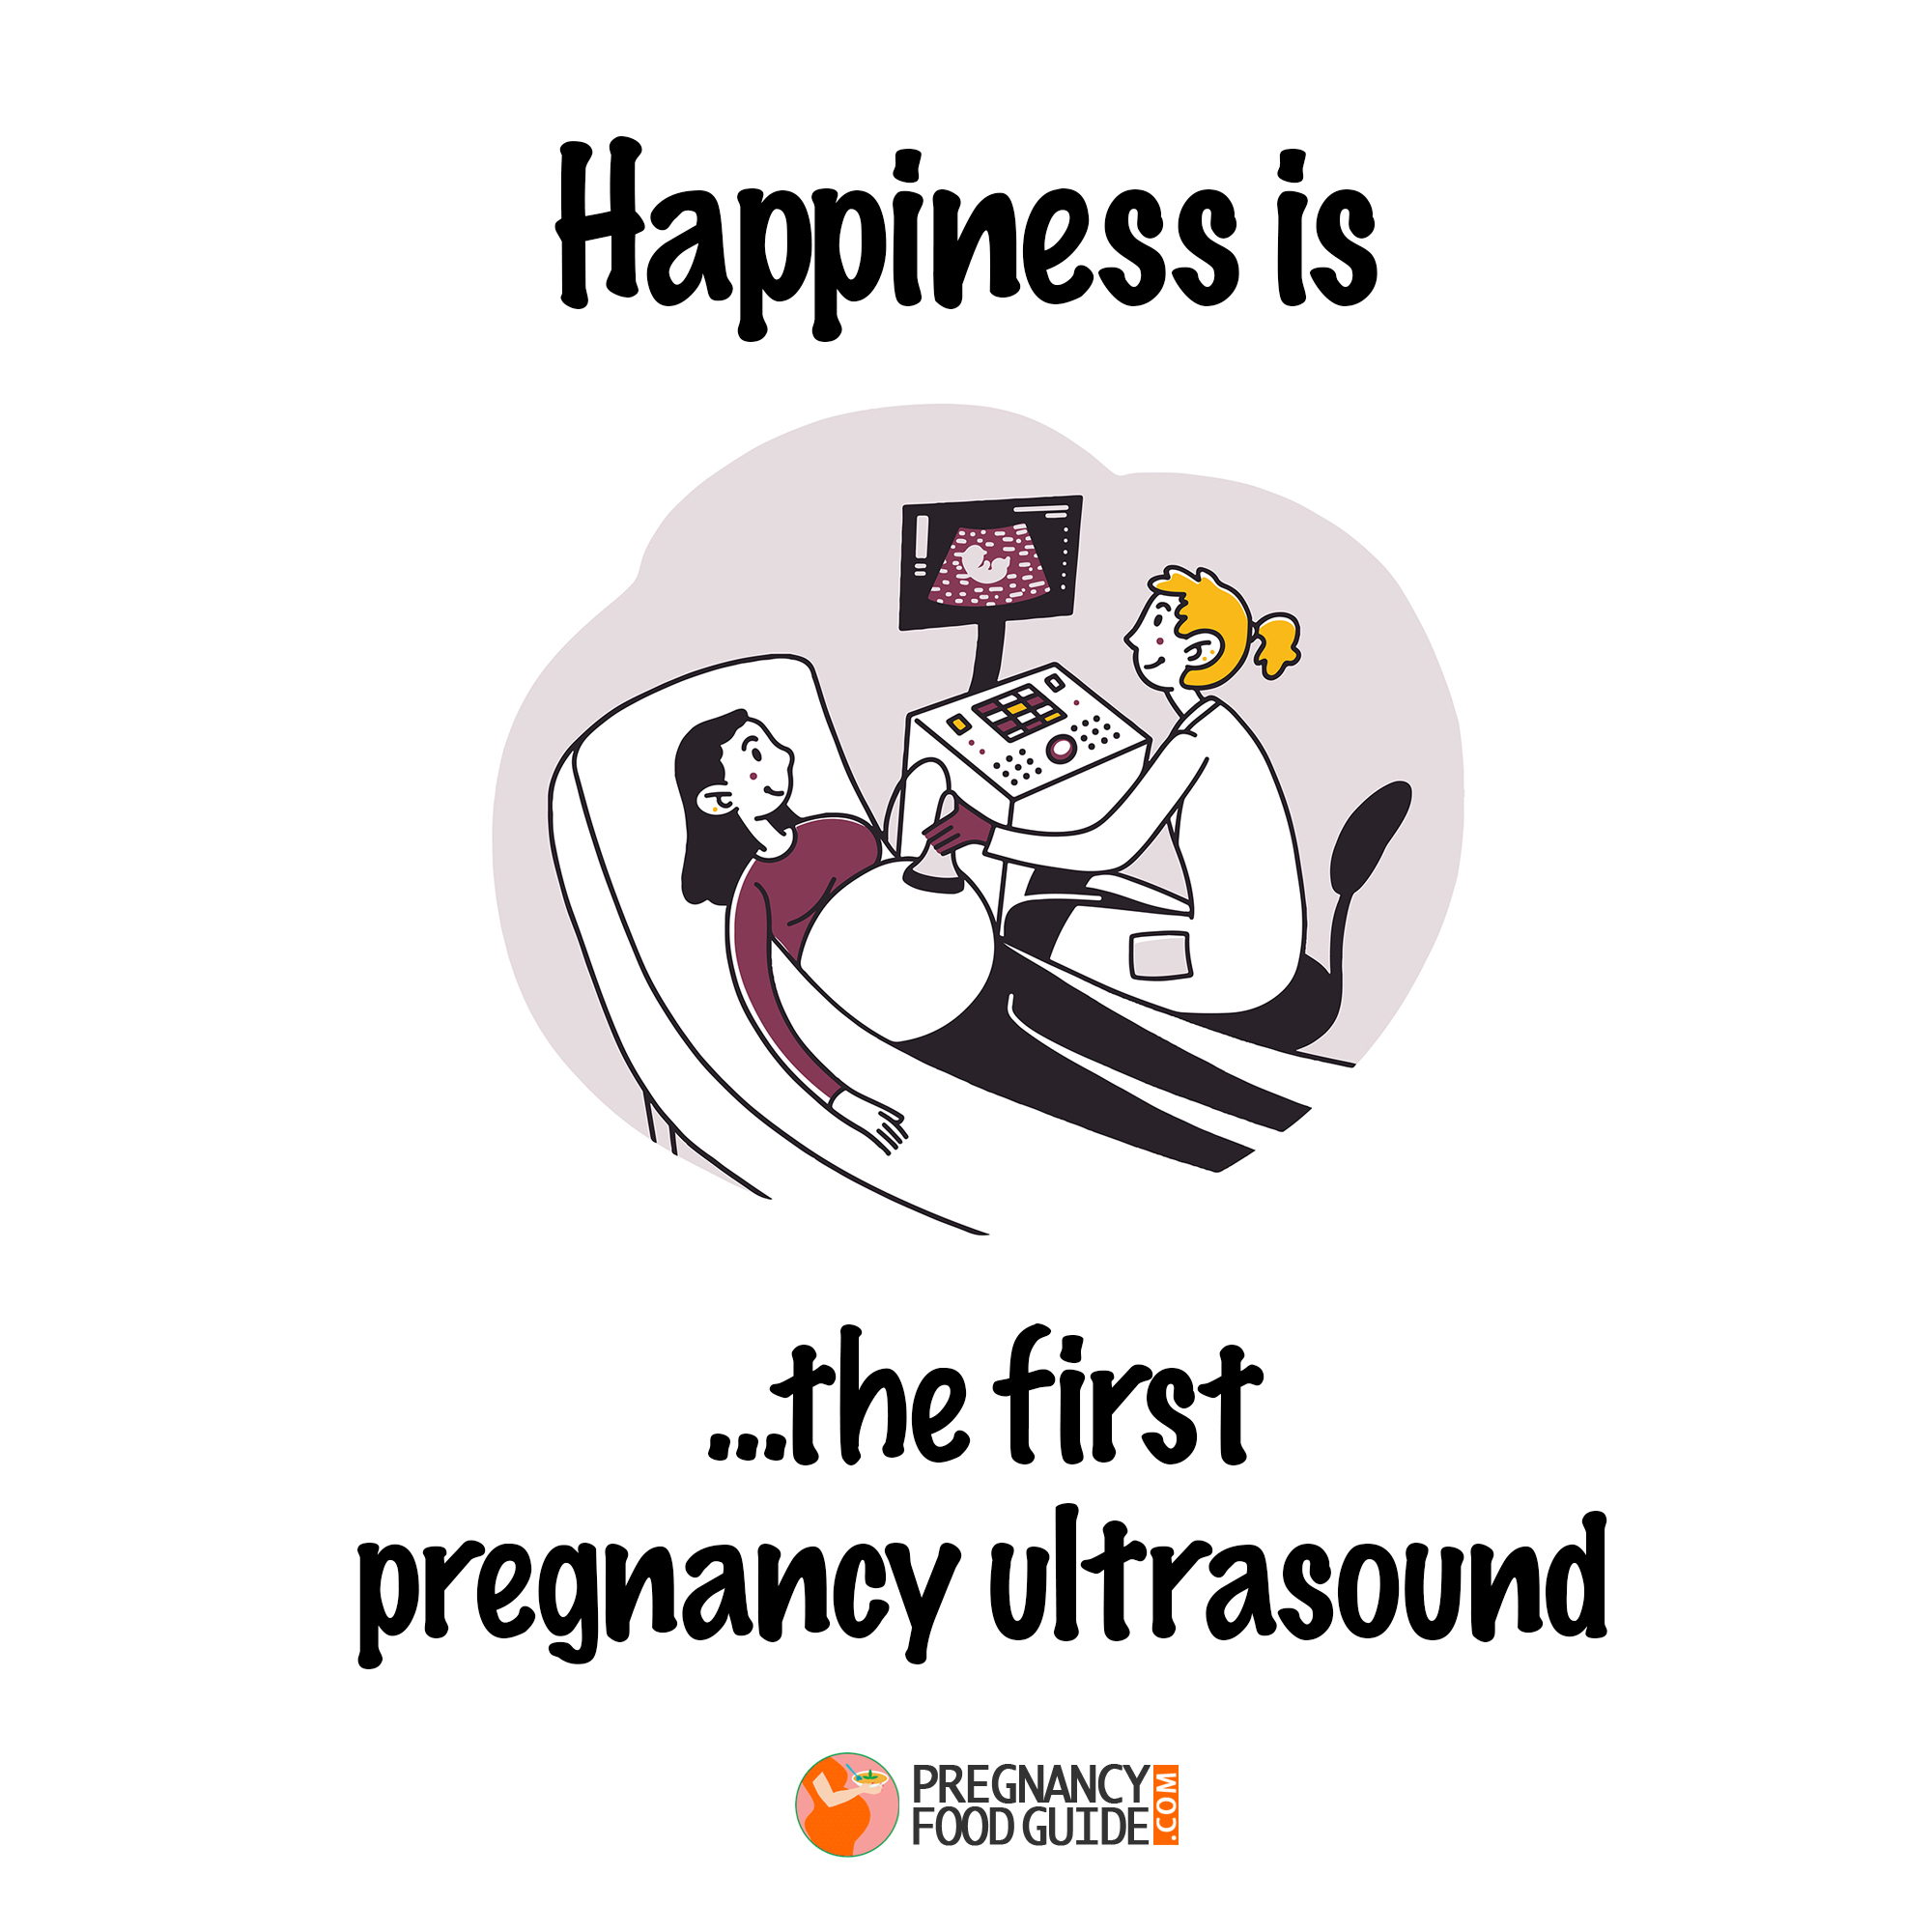 First pregnancy ultrasound